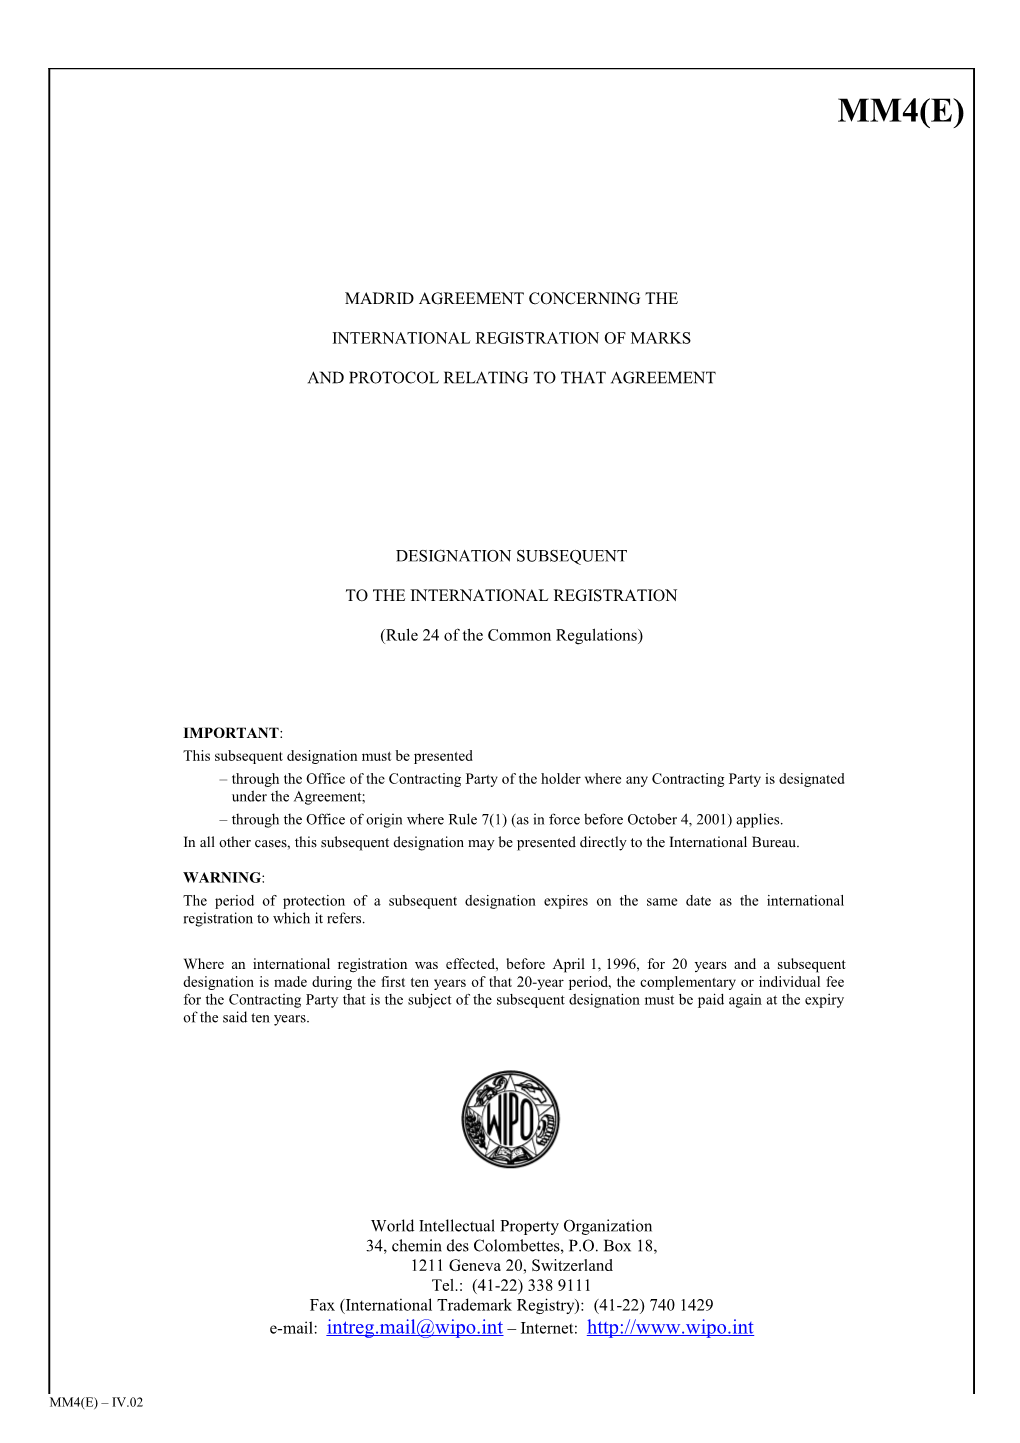 Form MM4 (Madrid Agreement Concerning the International Registration of Marks)